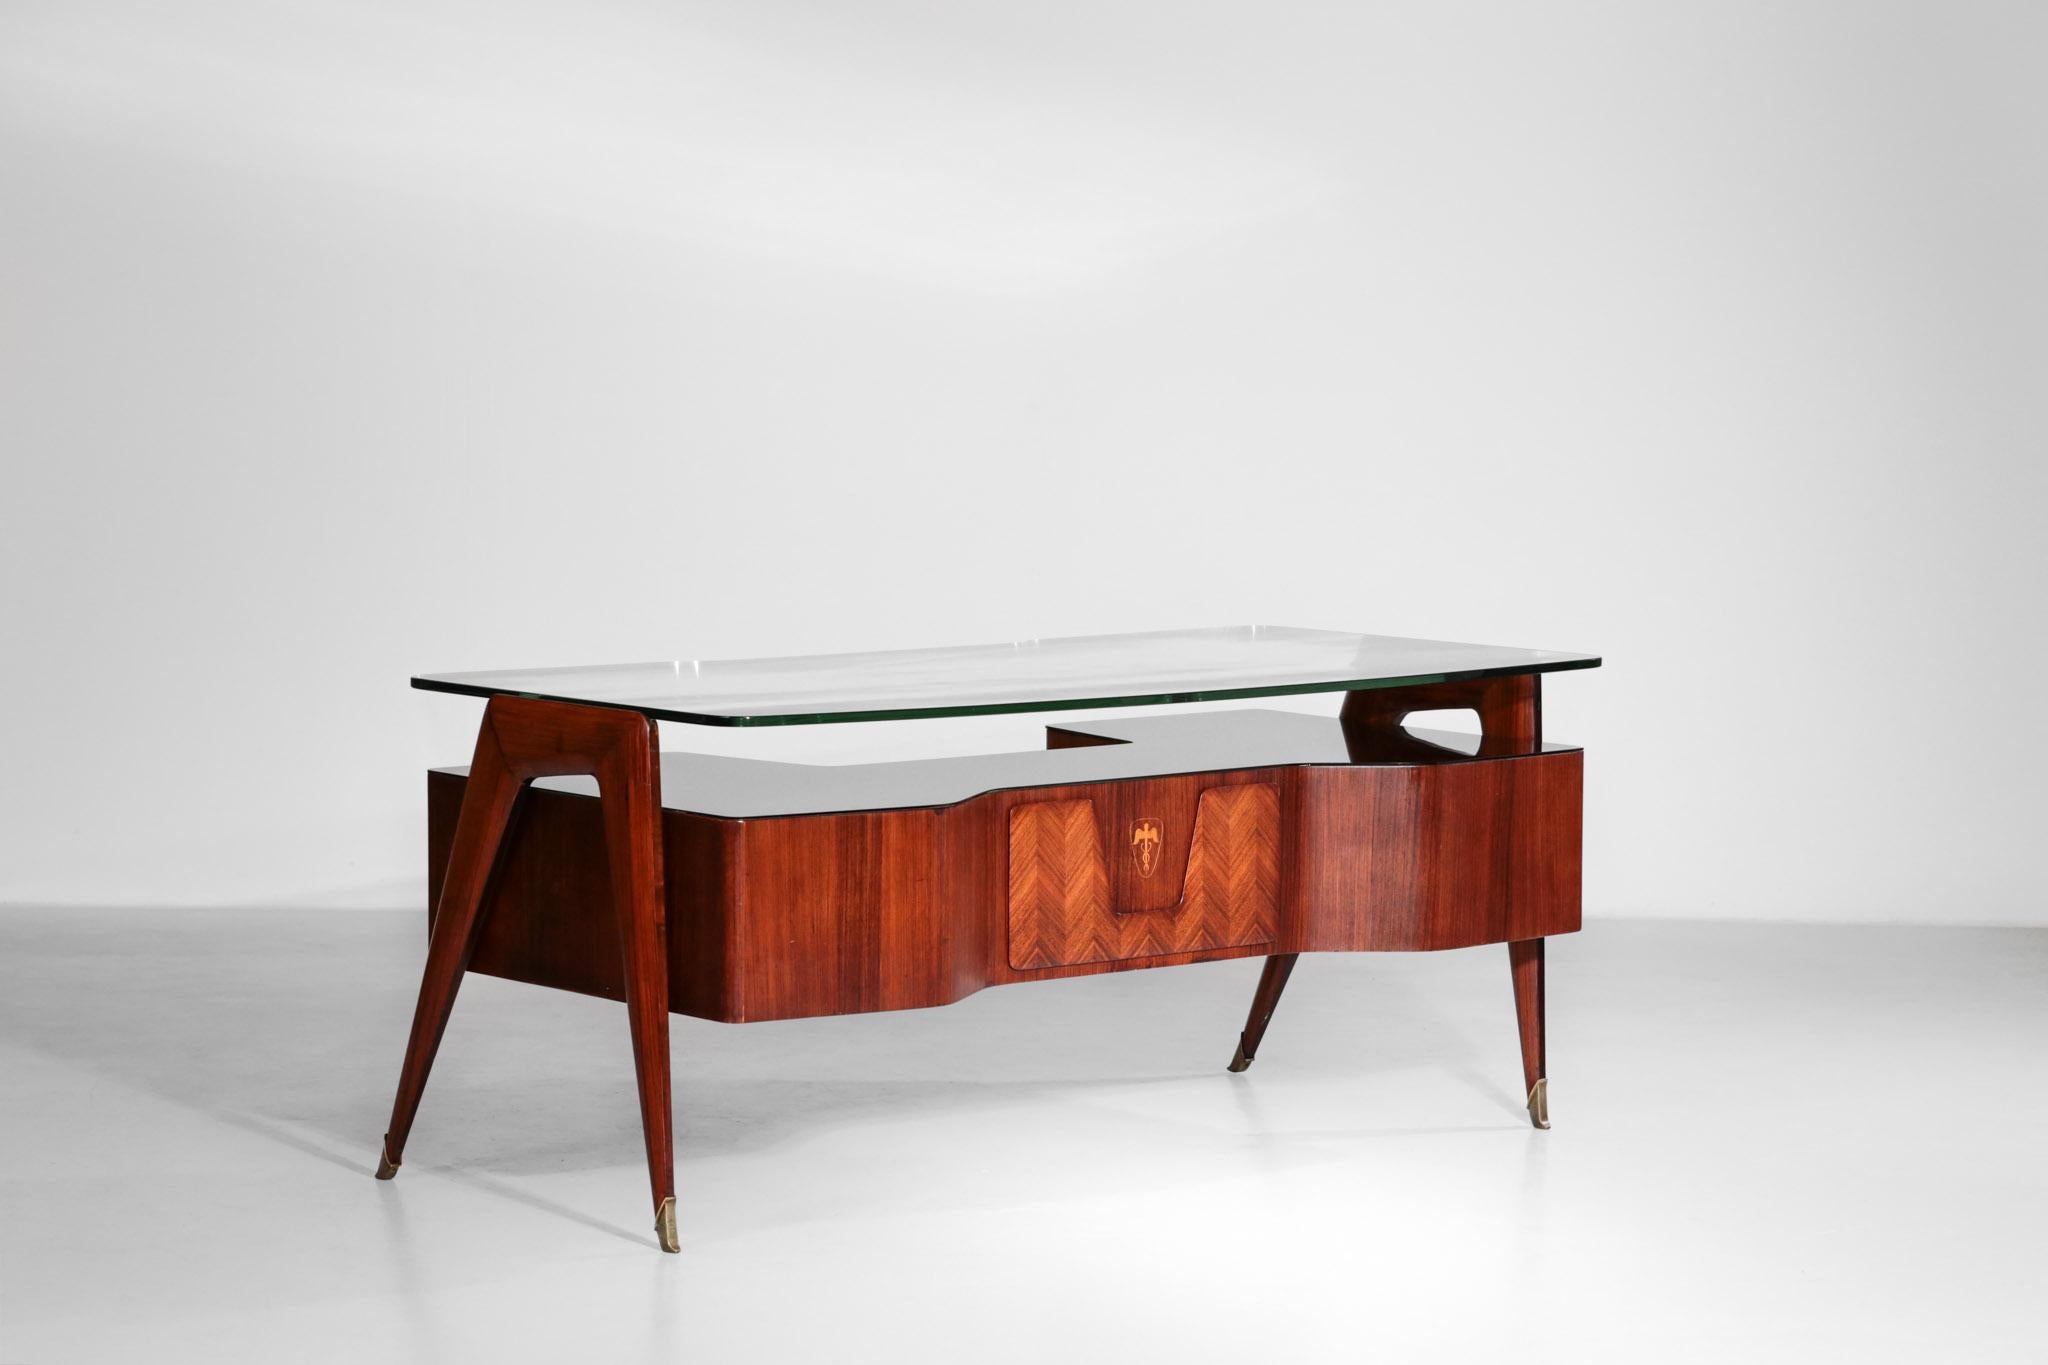 Unglaublicher Schreibtisch von dem berühmten Designer Vittorio Dassi.
Dieser Schreibtisch hat eine dicke Glasplatte, die von einer Struktur aus Nussbaumholz getragen wird. Ein weiteres braunes Glas befindet sich auf der Oberseite der